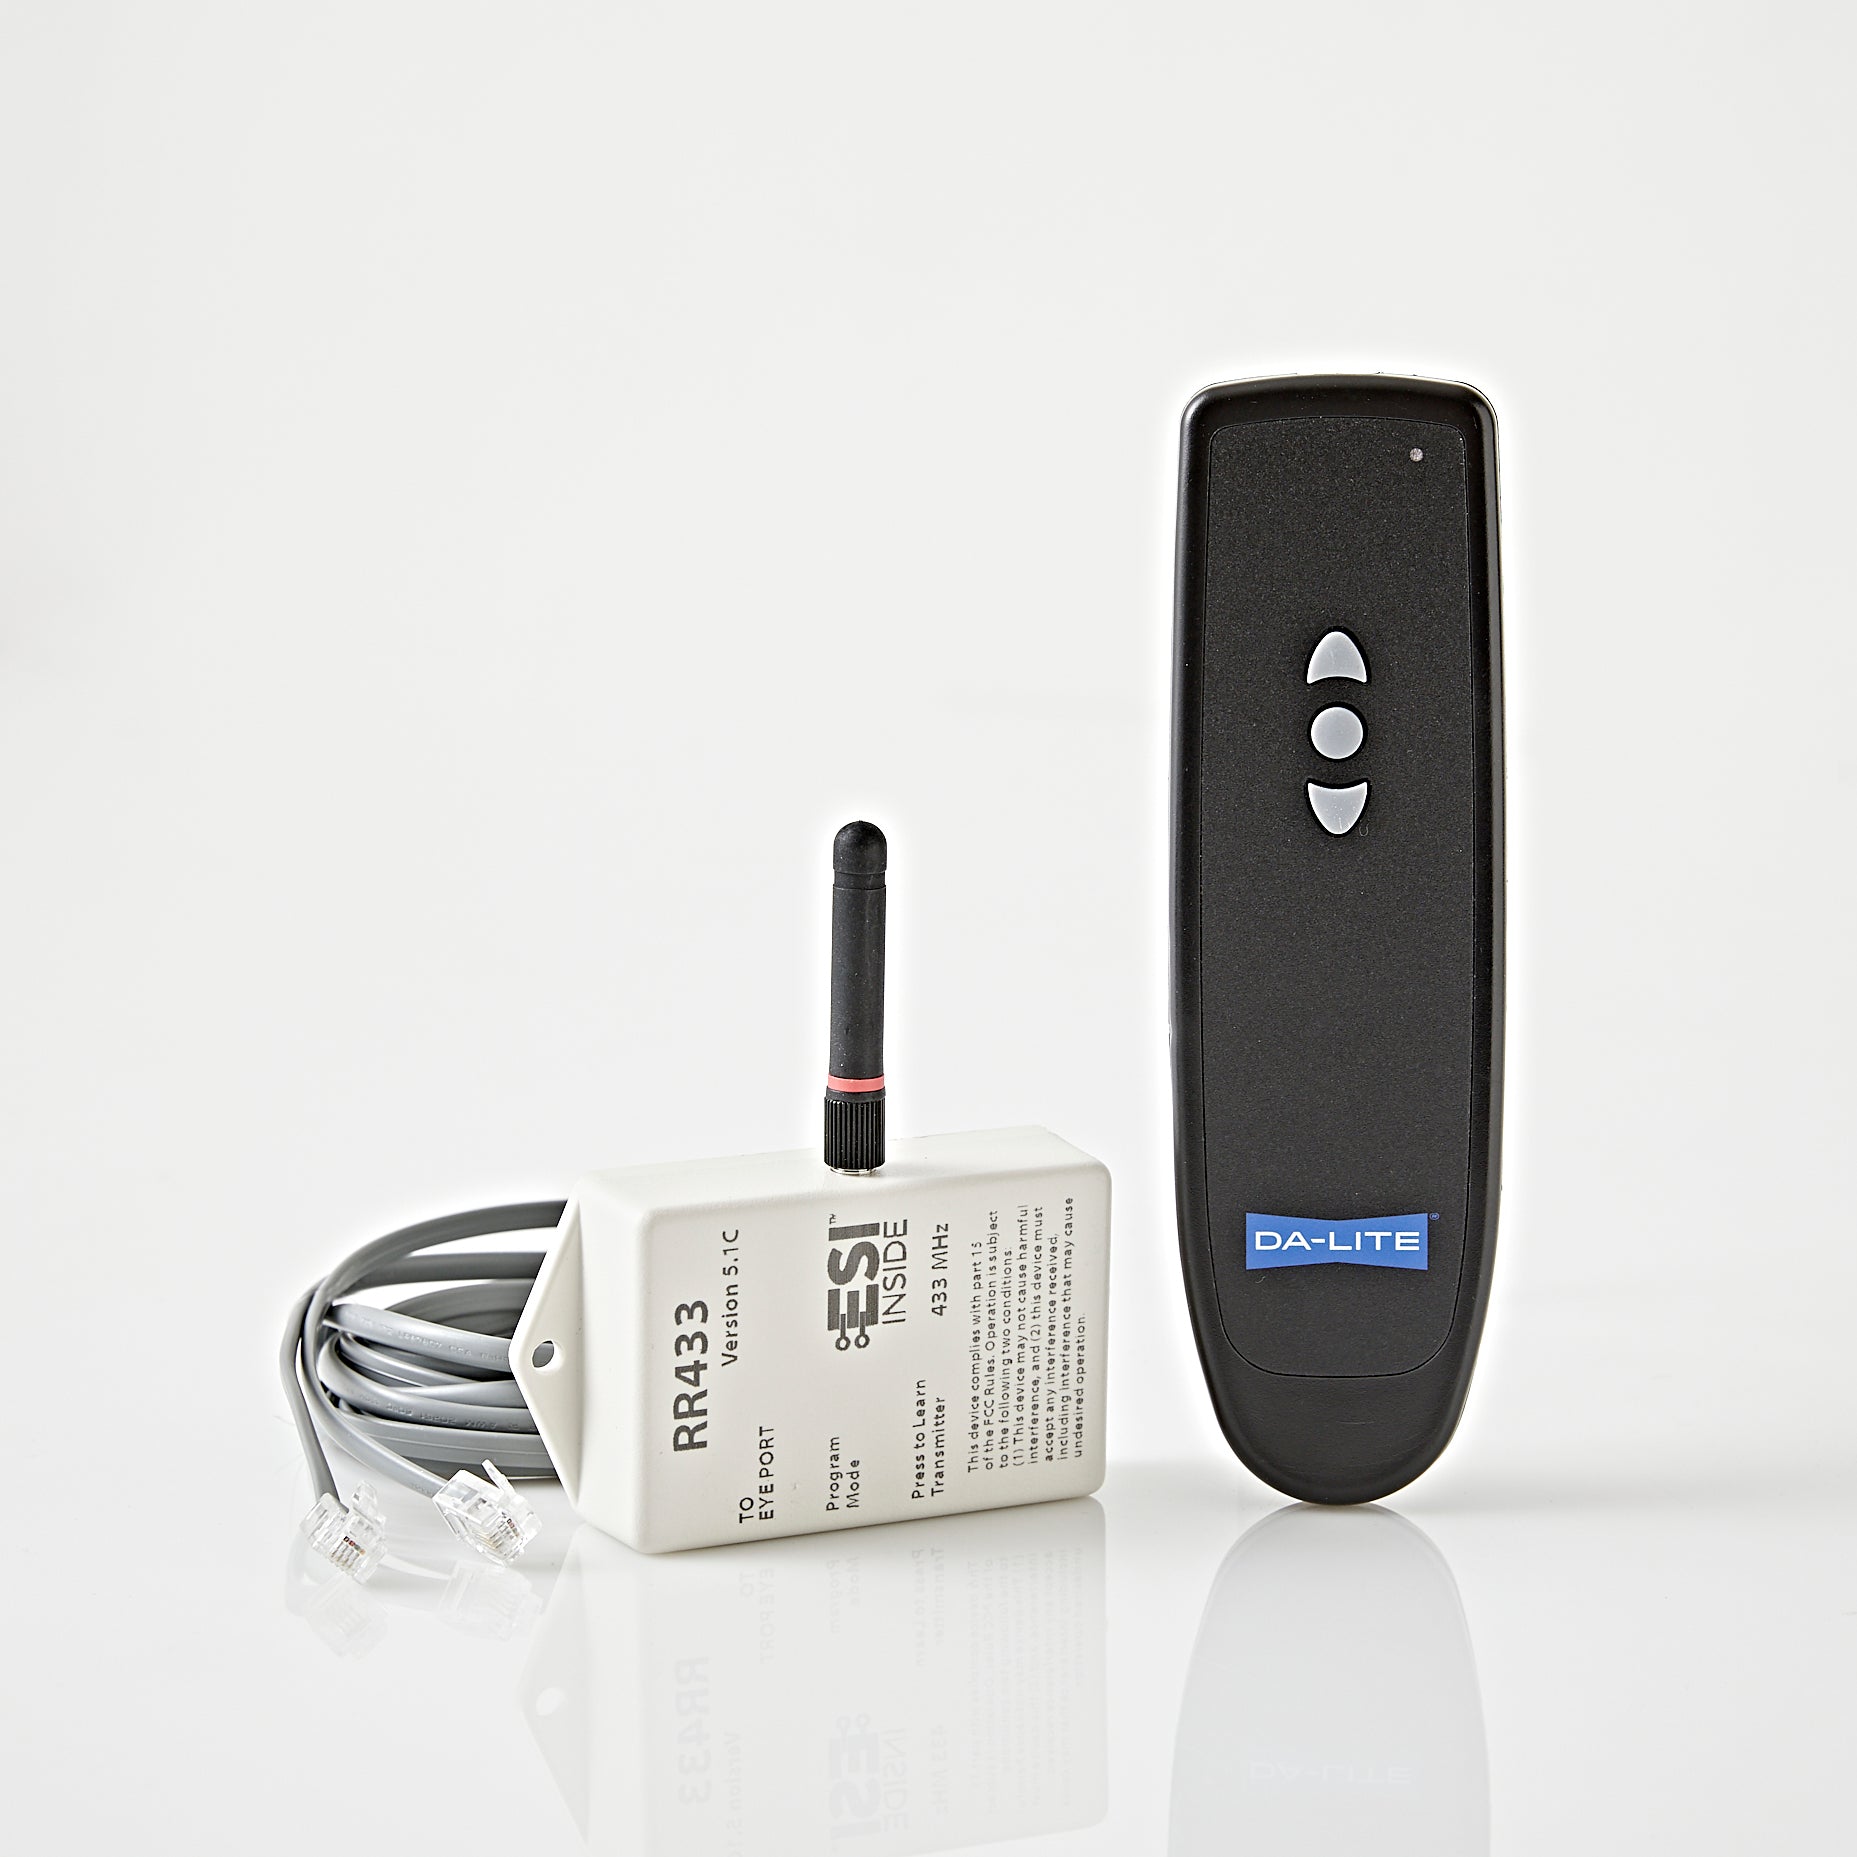 Da-Lite Radio Frequency Wireless Remote